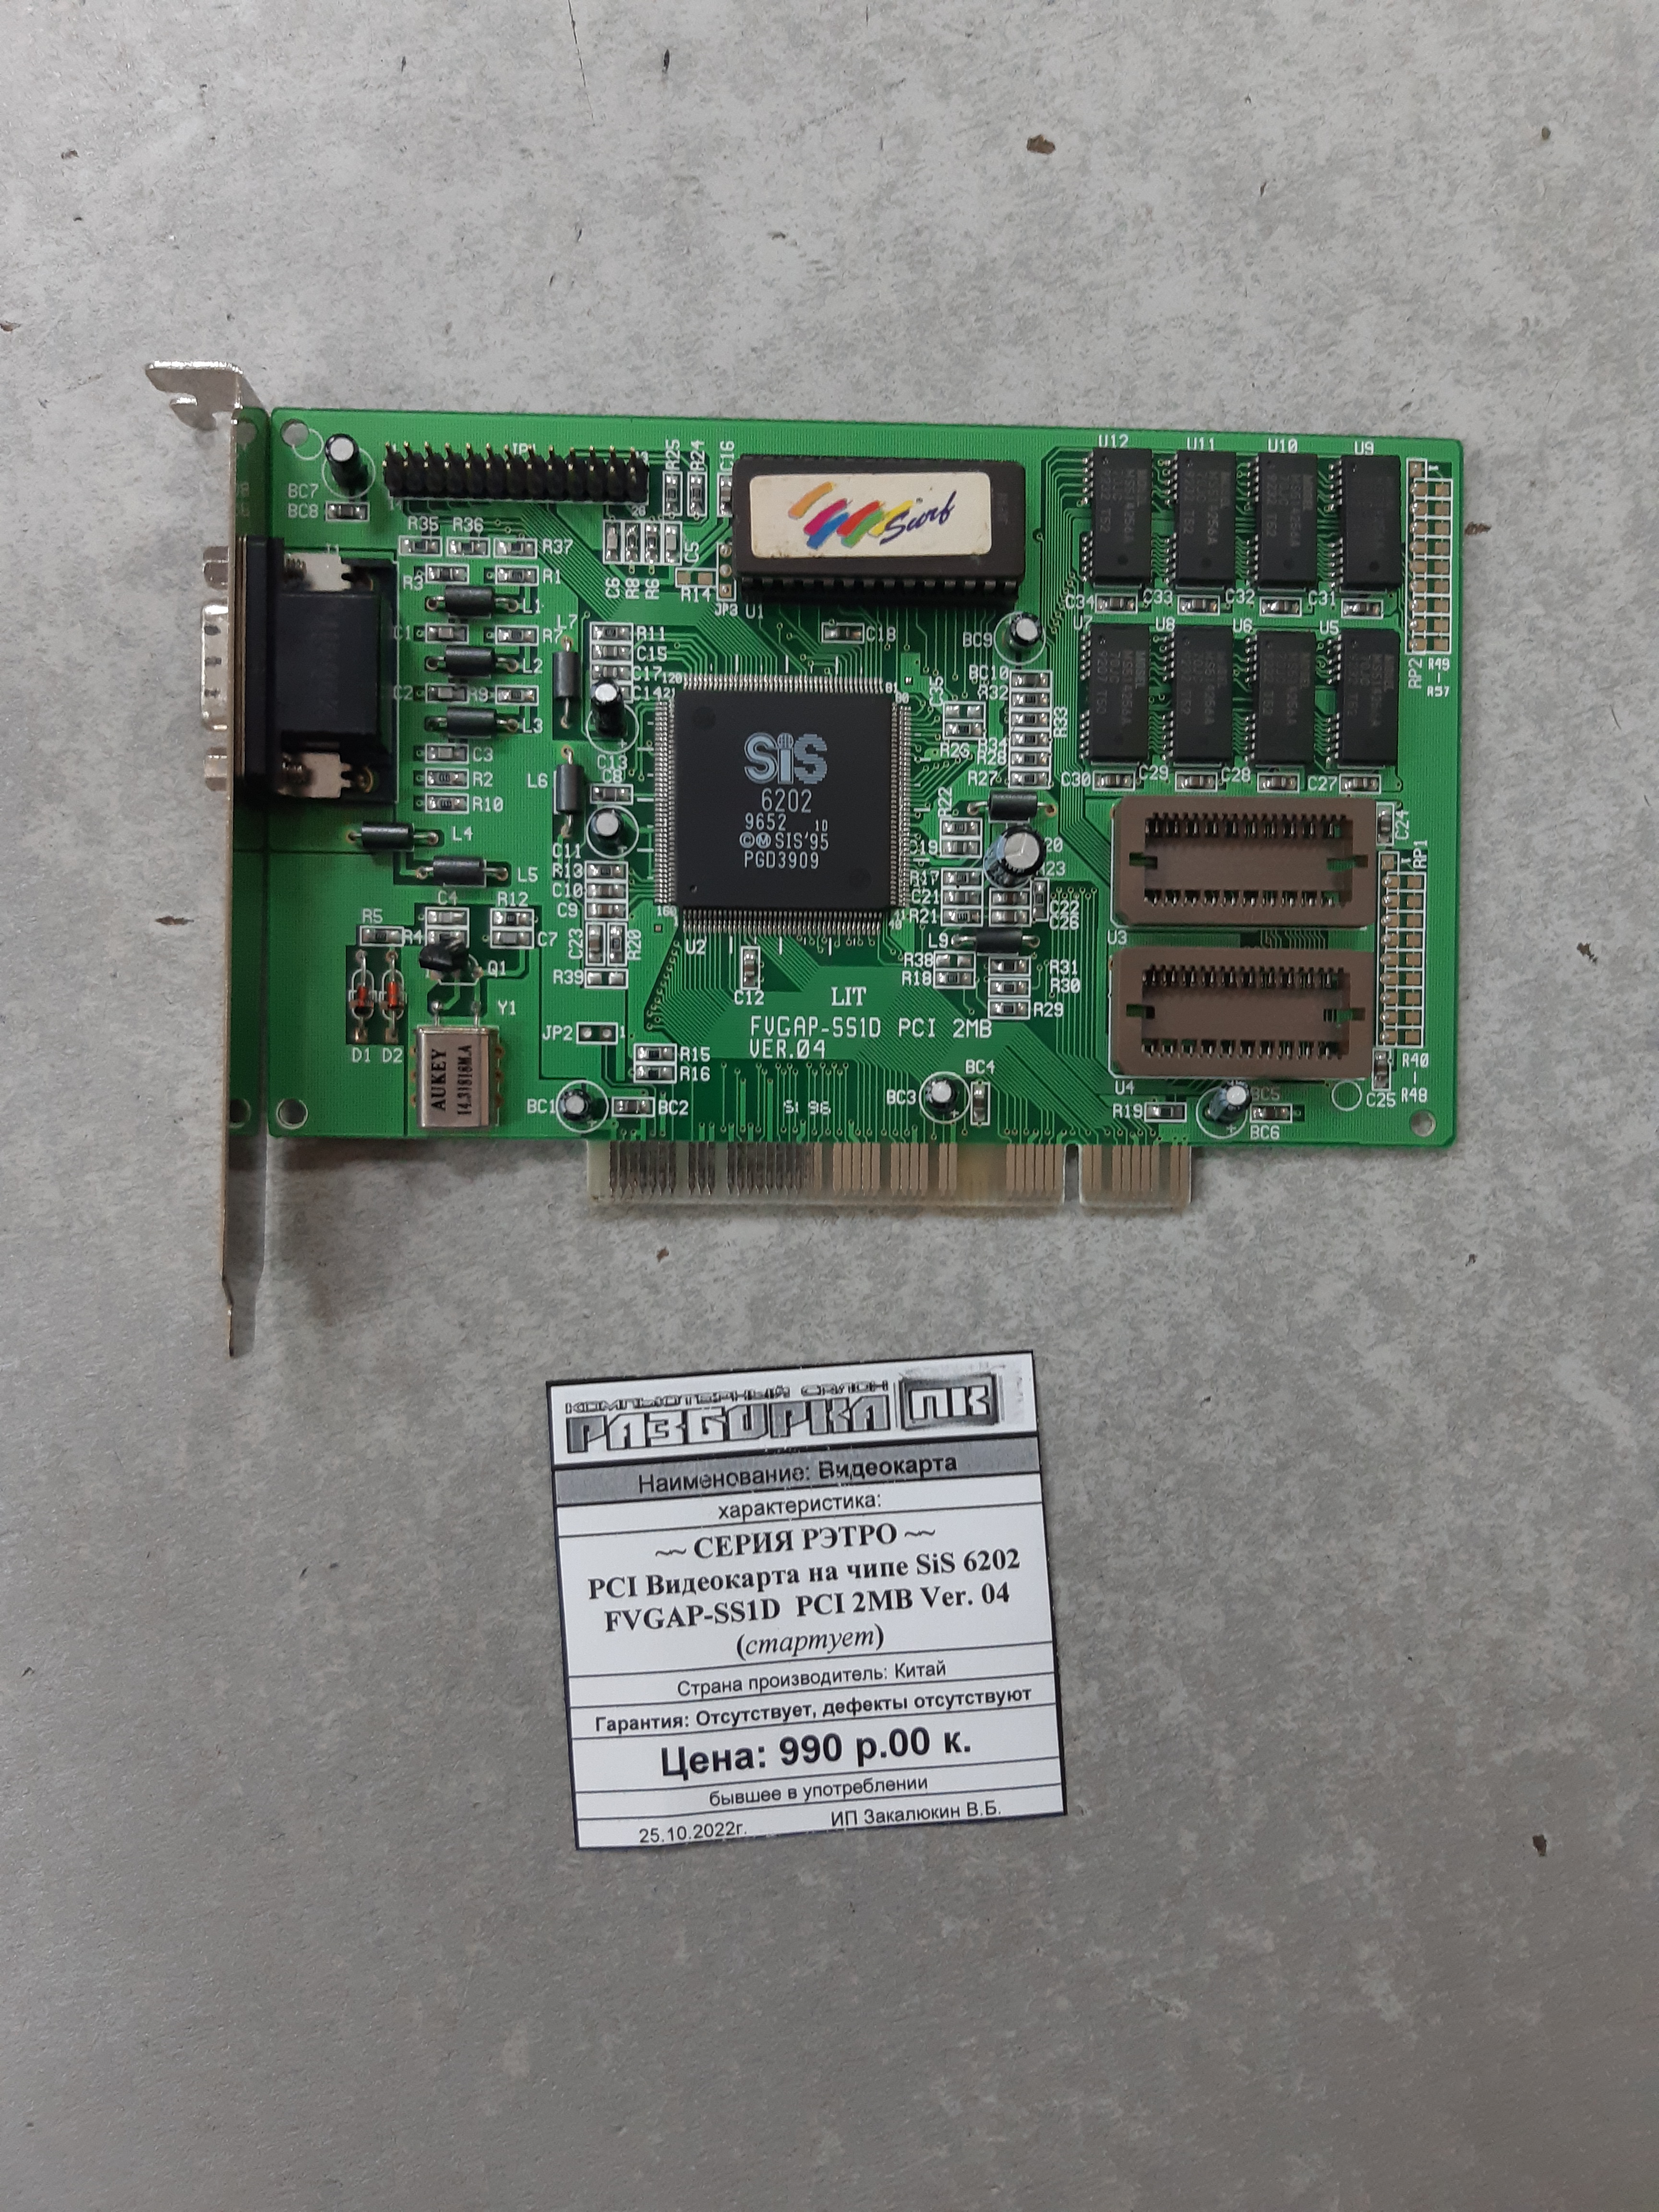 Видеокарта на чипе SiS 6202 FVGAP-SS1D PCI 2MB Ver. 04